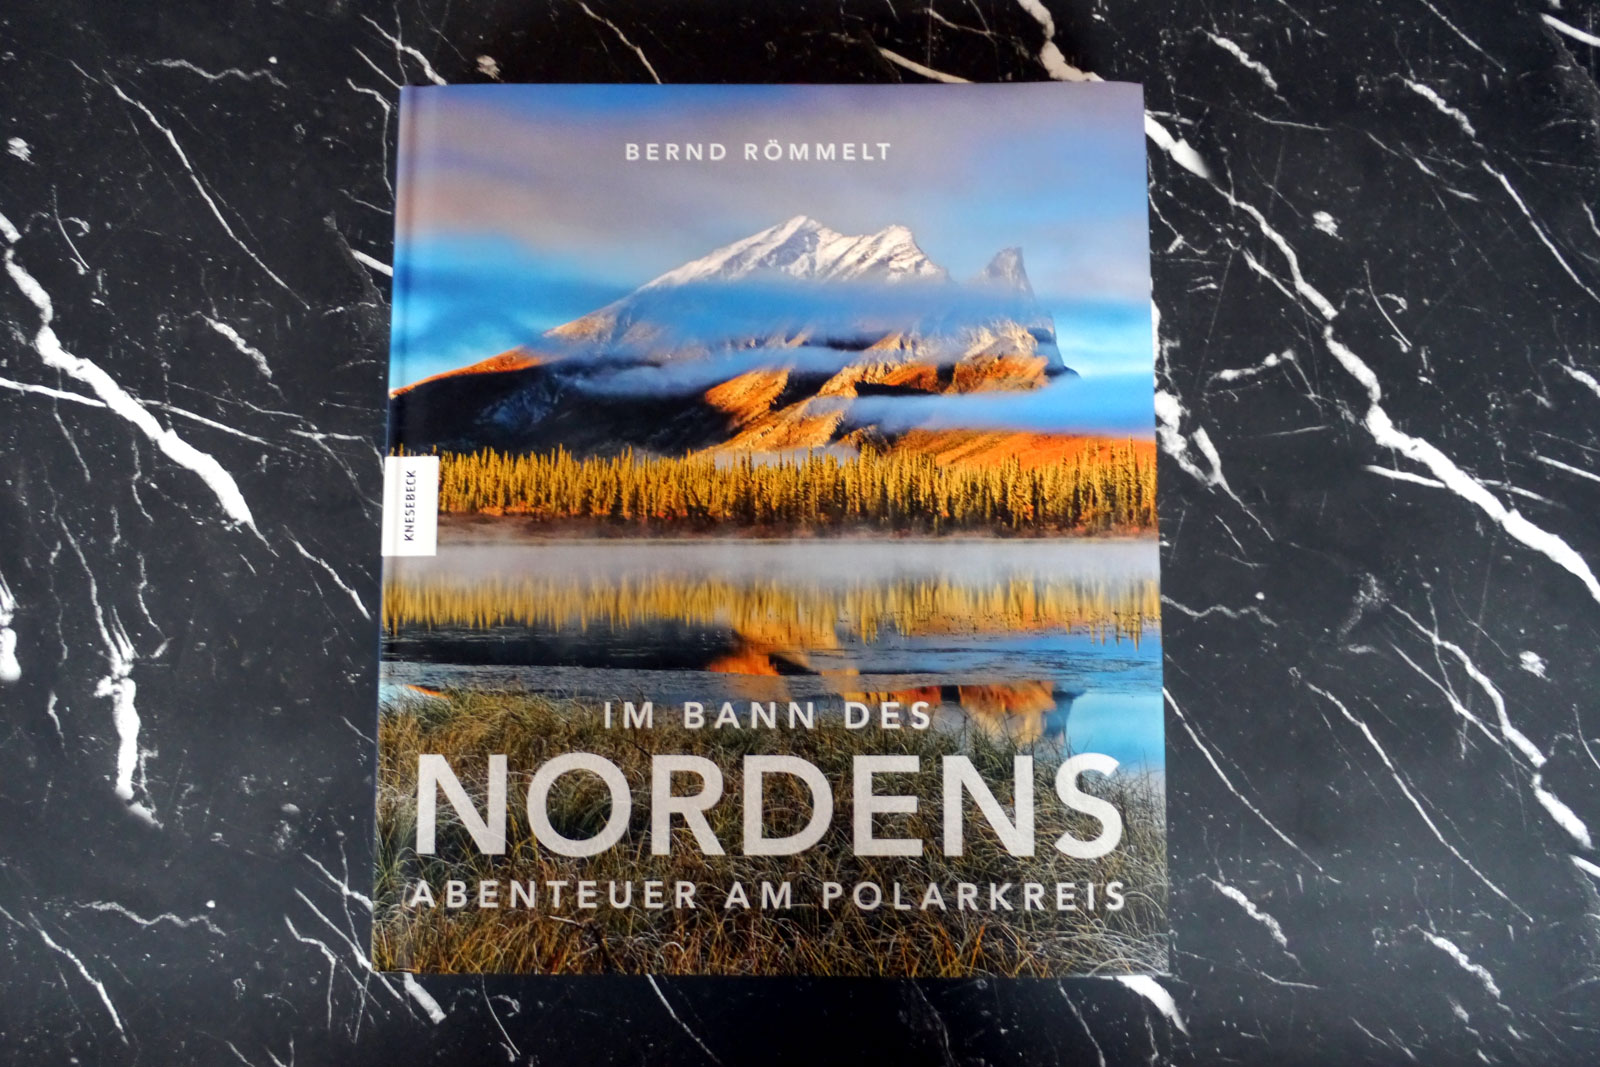 Im Bann des Nordens. Abenteuer am Polarkreis von Bernd Römmelt, Knesebeck Verlag